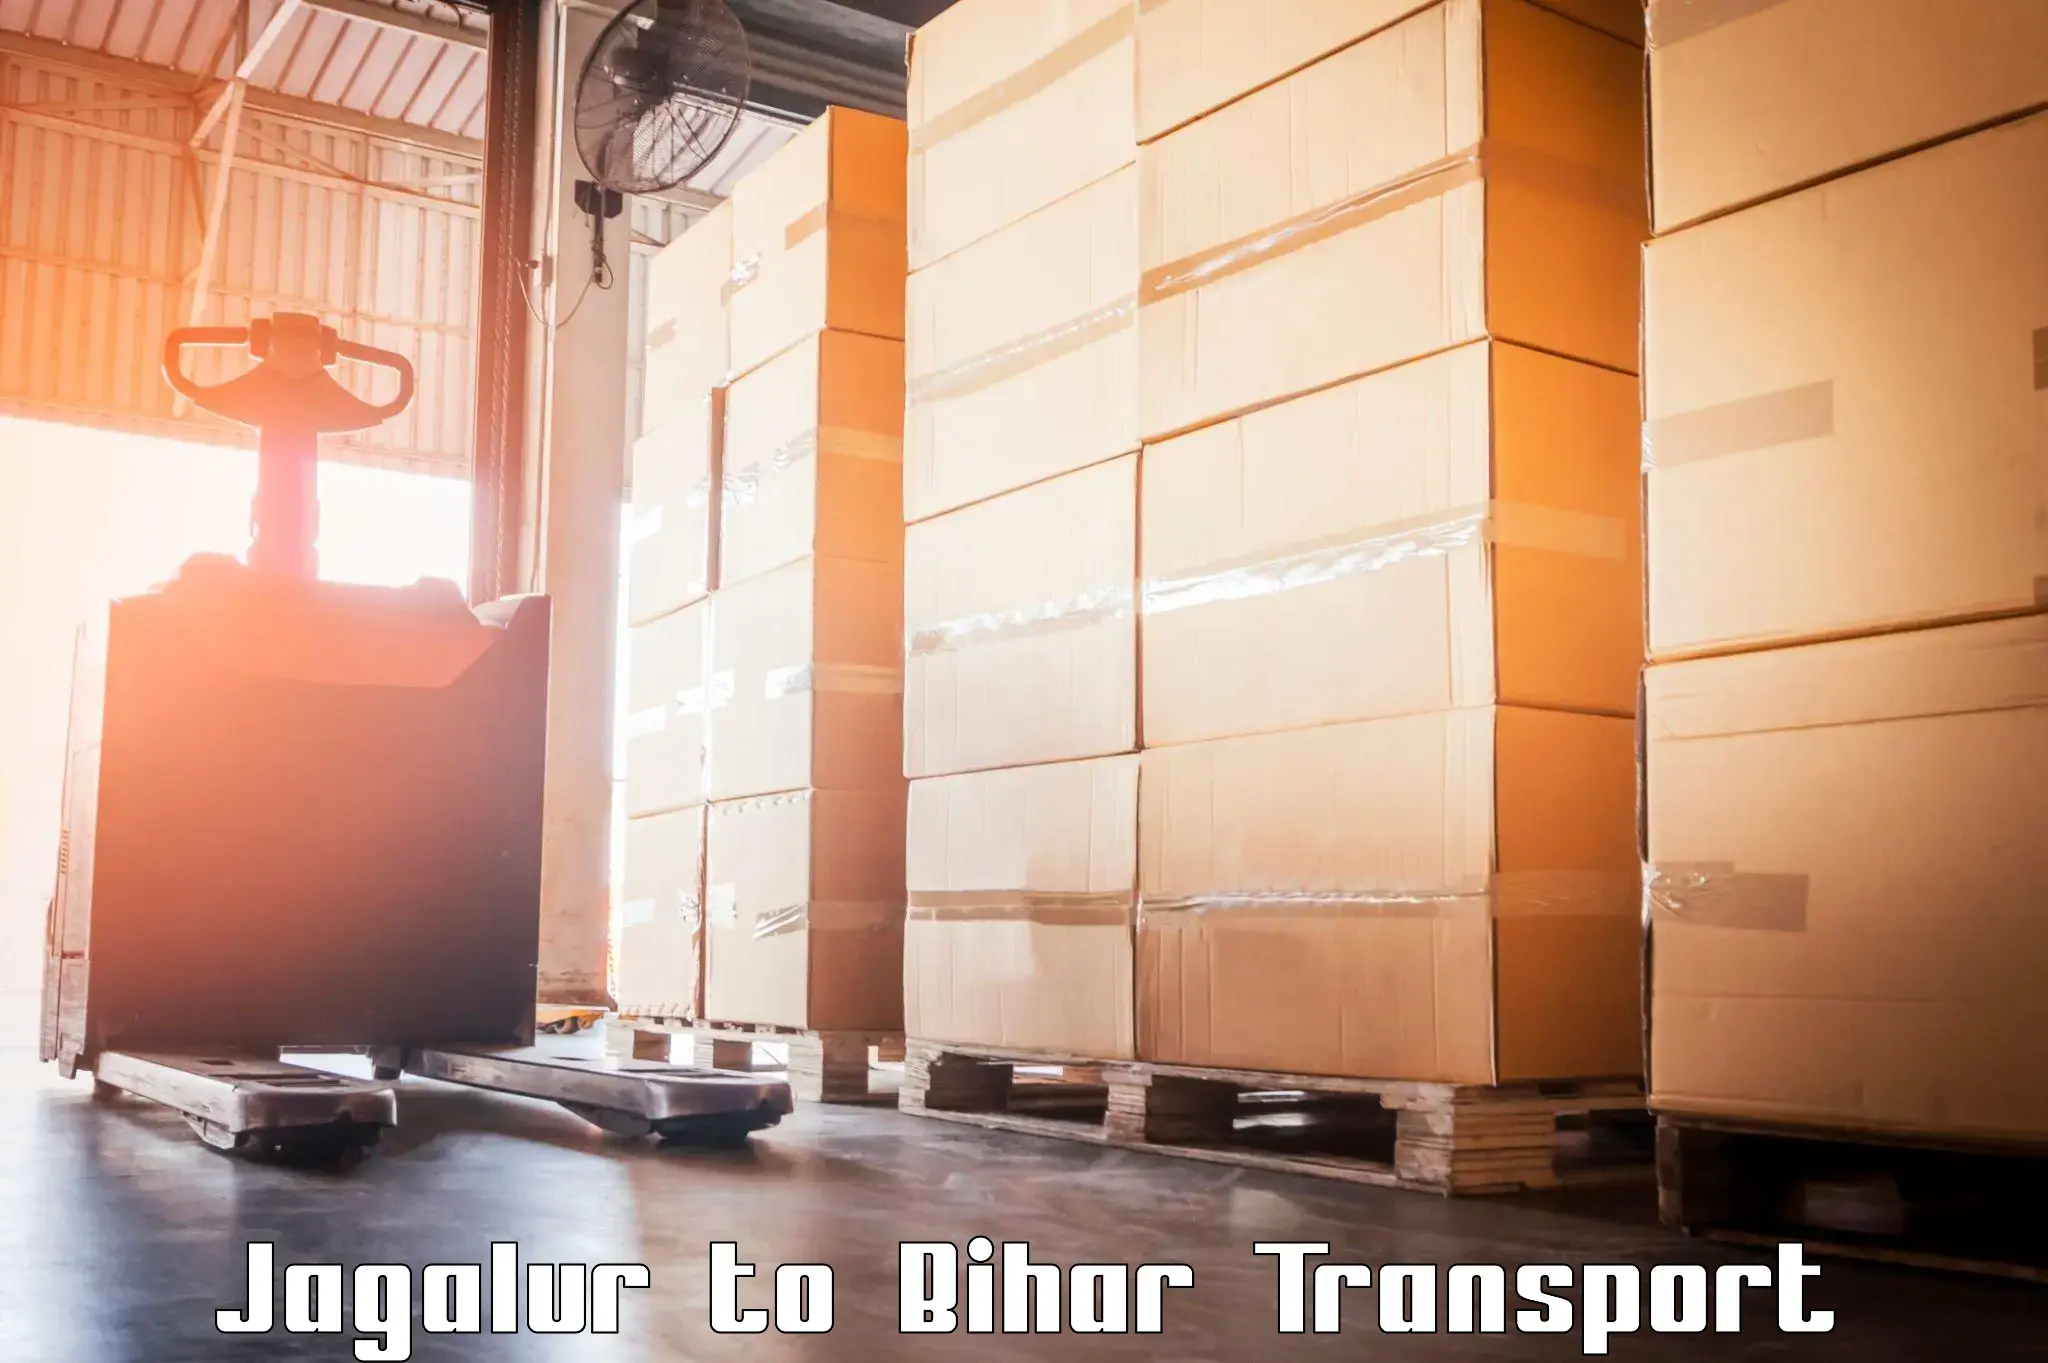 Container transport service Jagalur to Manihari